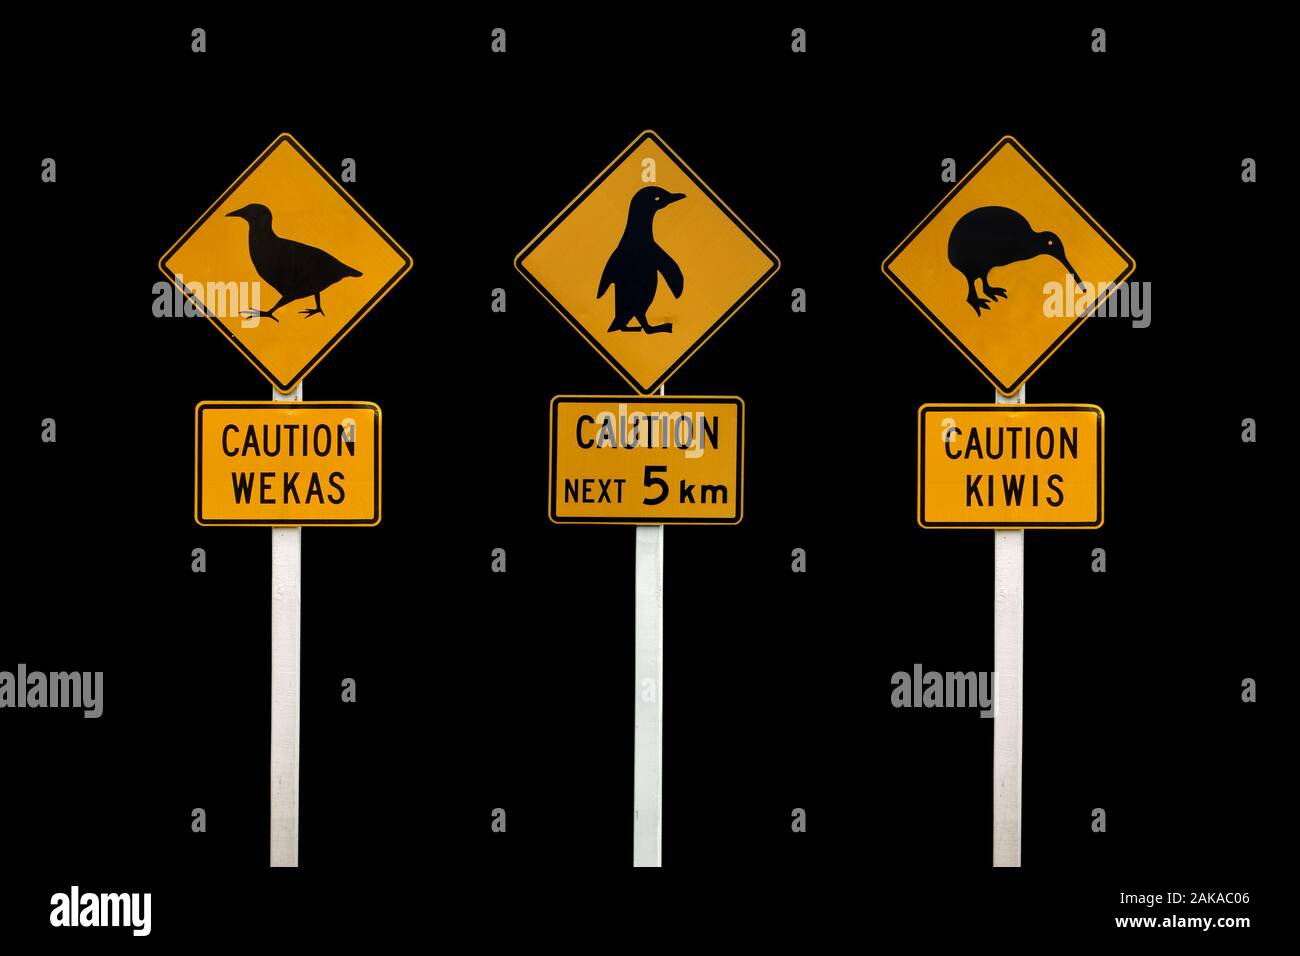 Las señales de la carretera Nueva Zelandia sobre fondo negro. Precaución Los kiwis, prudencia, precaución wekas pingüinos Foto de stock